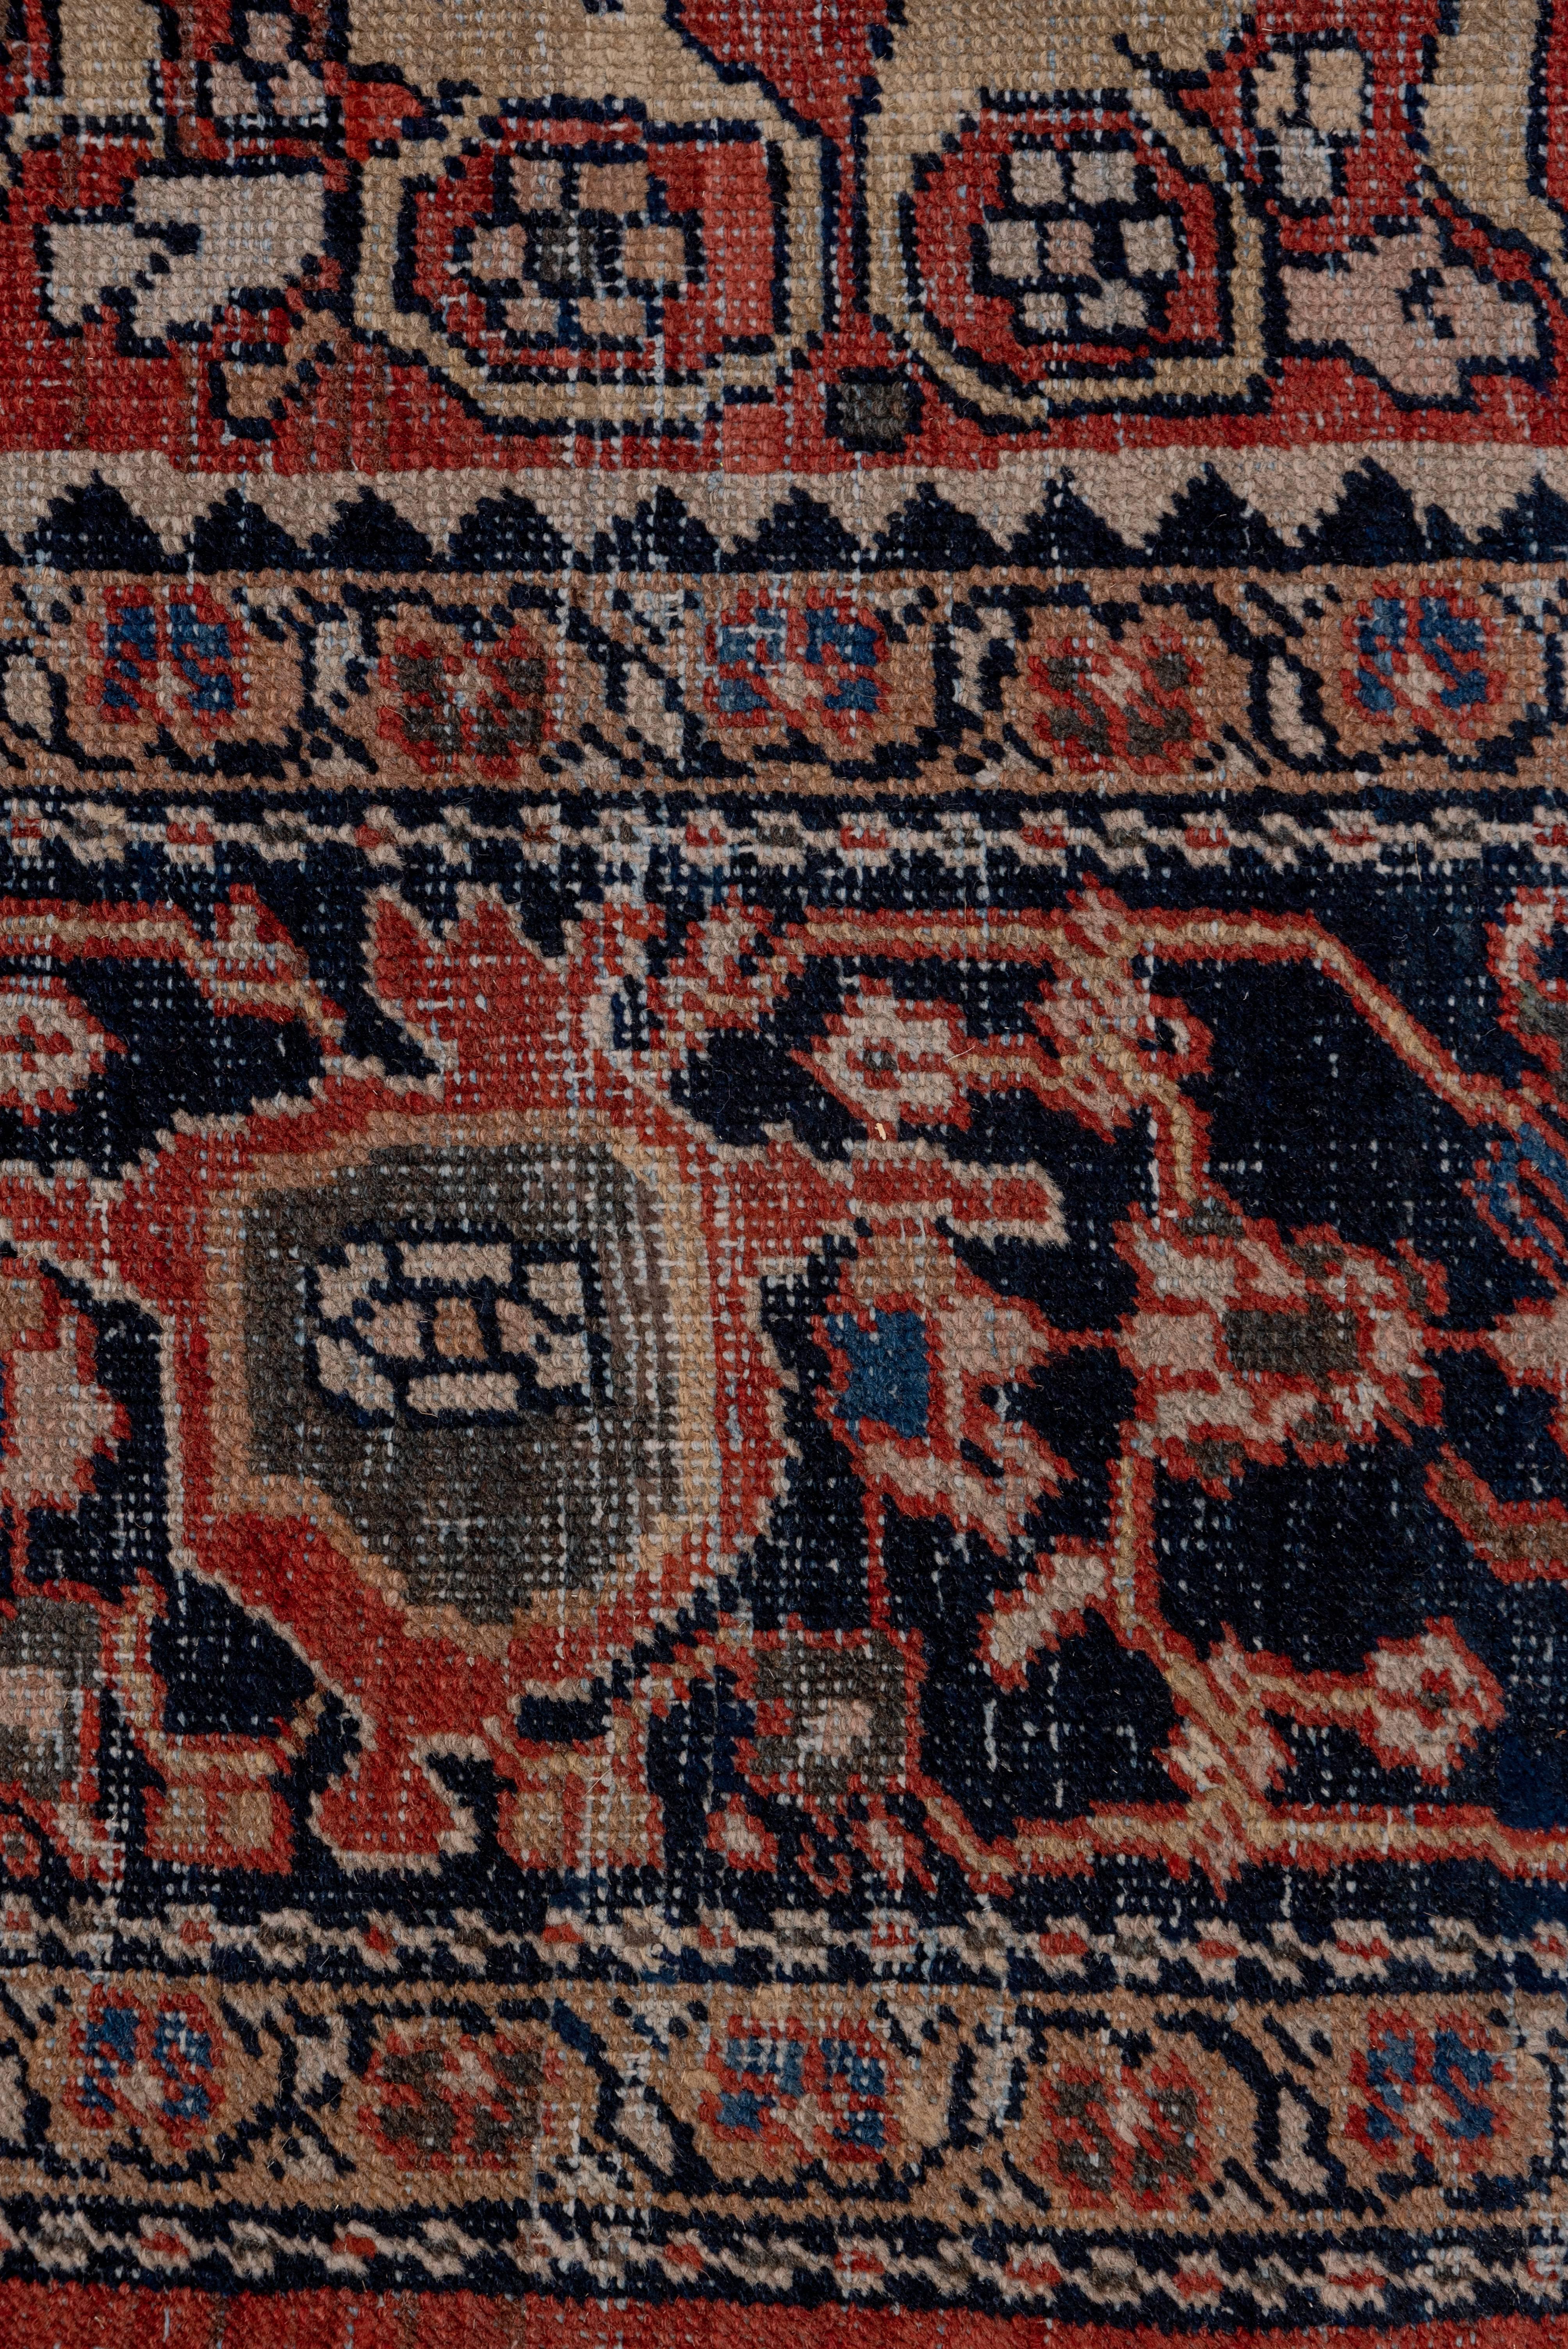 Wool Antique Red Persian Mahal Carpet